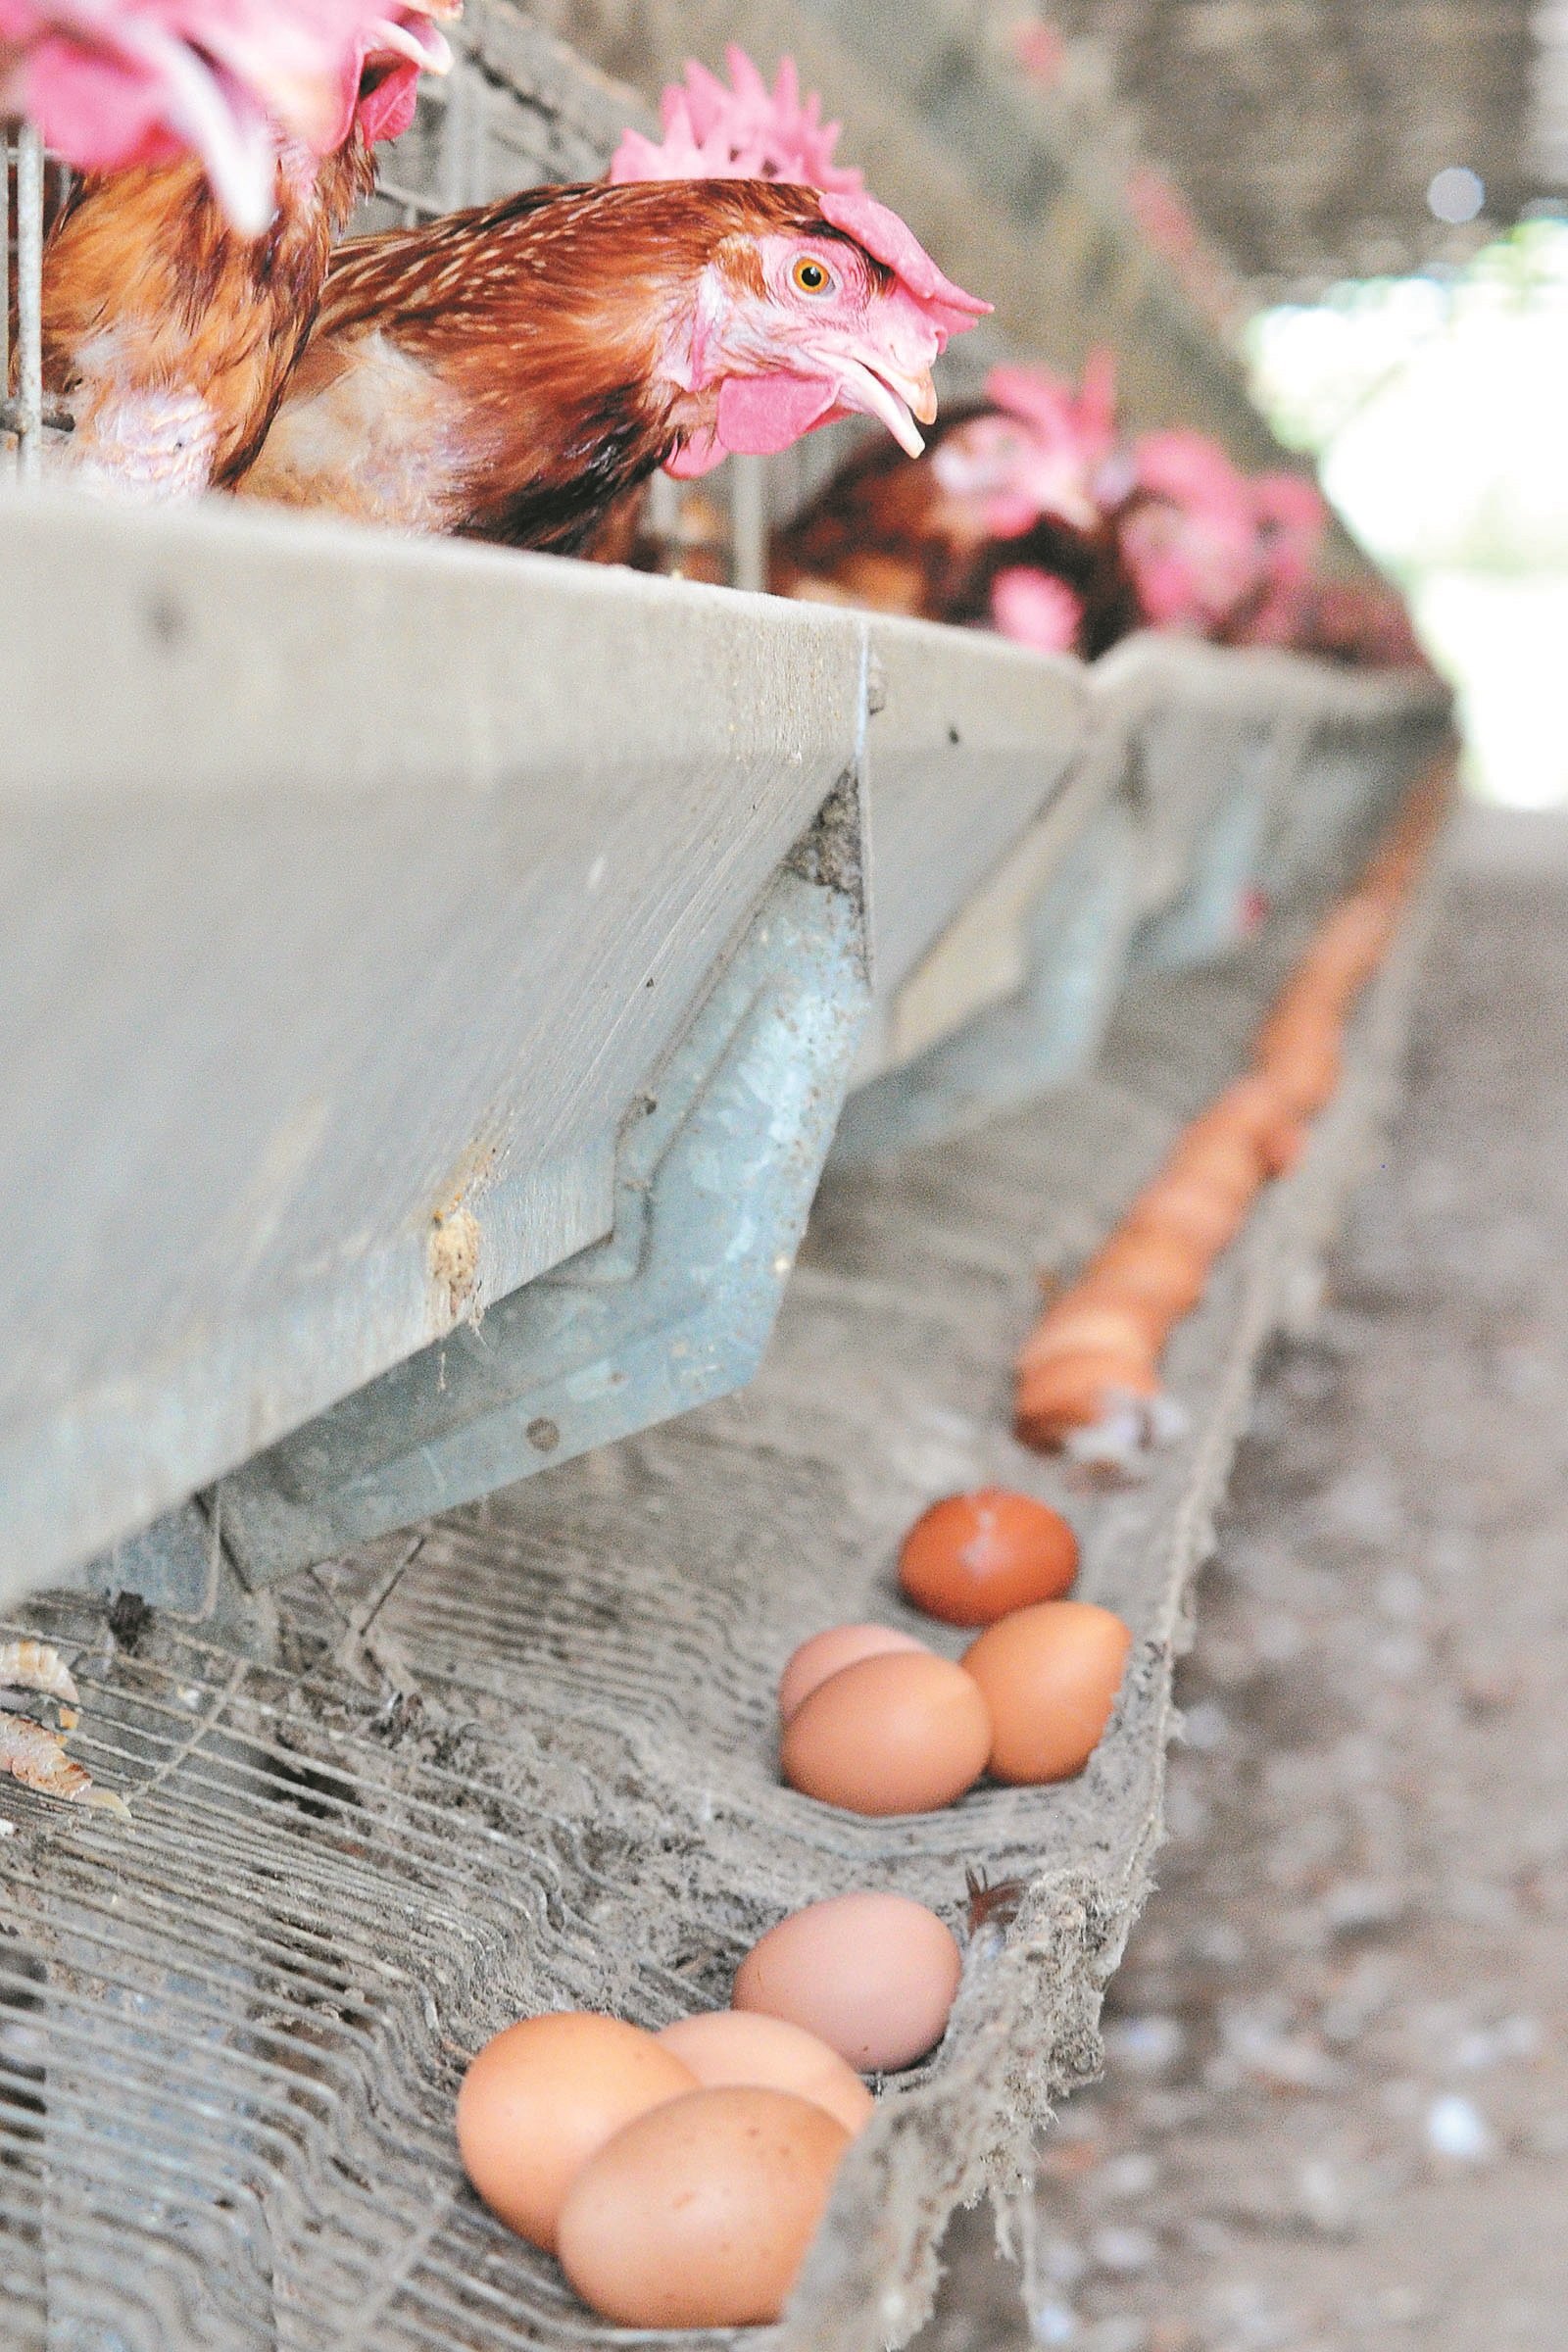 我国农场平均每天日产3000万颗鸡蛋，80％是供应本地市场，15％至16％是出口到新加坡或香港等地。（摄影：杨金森）